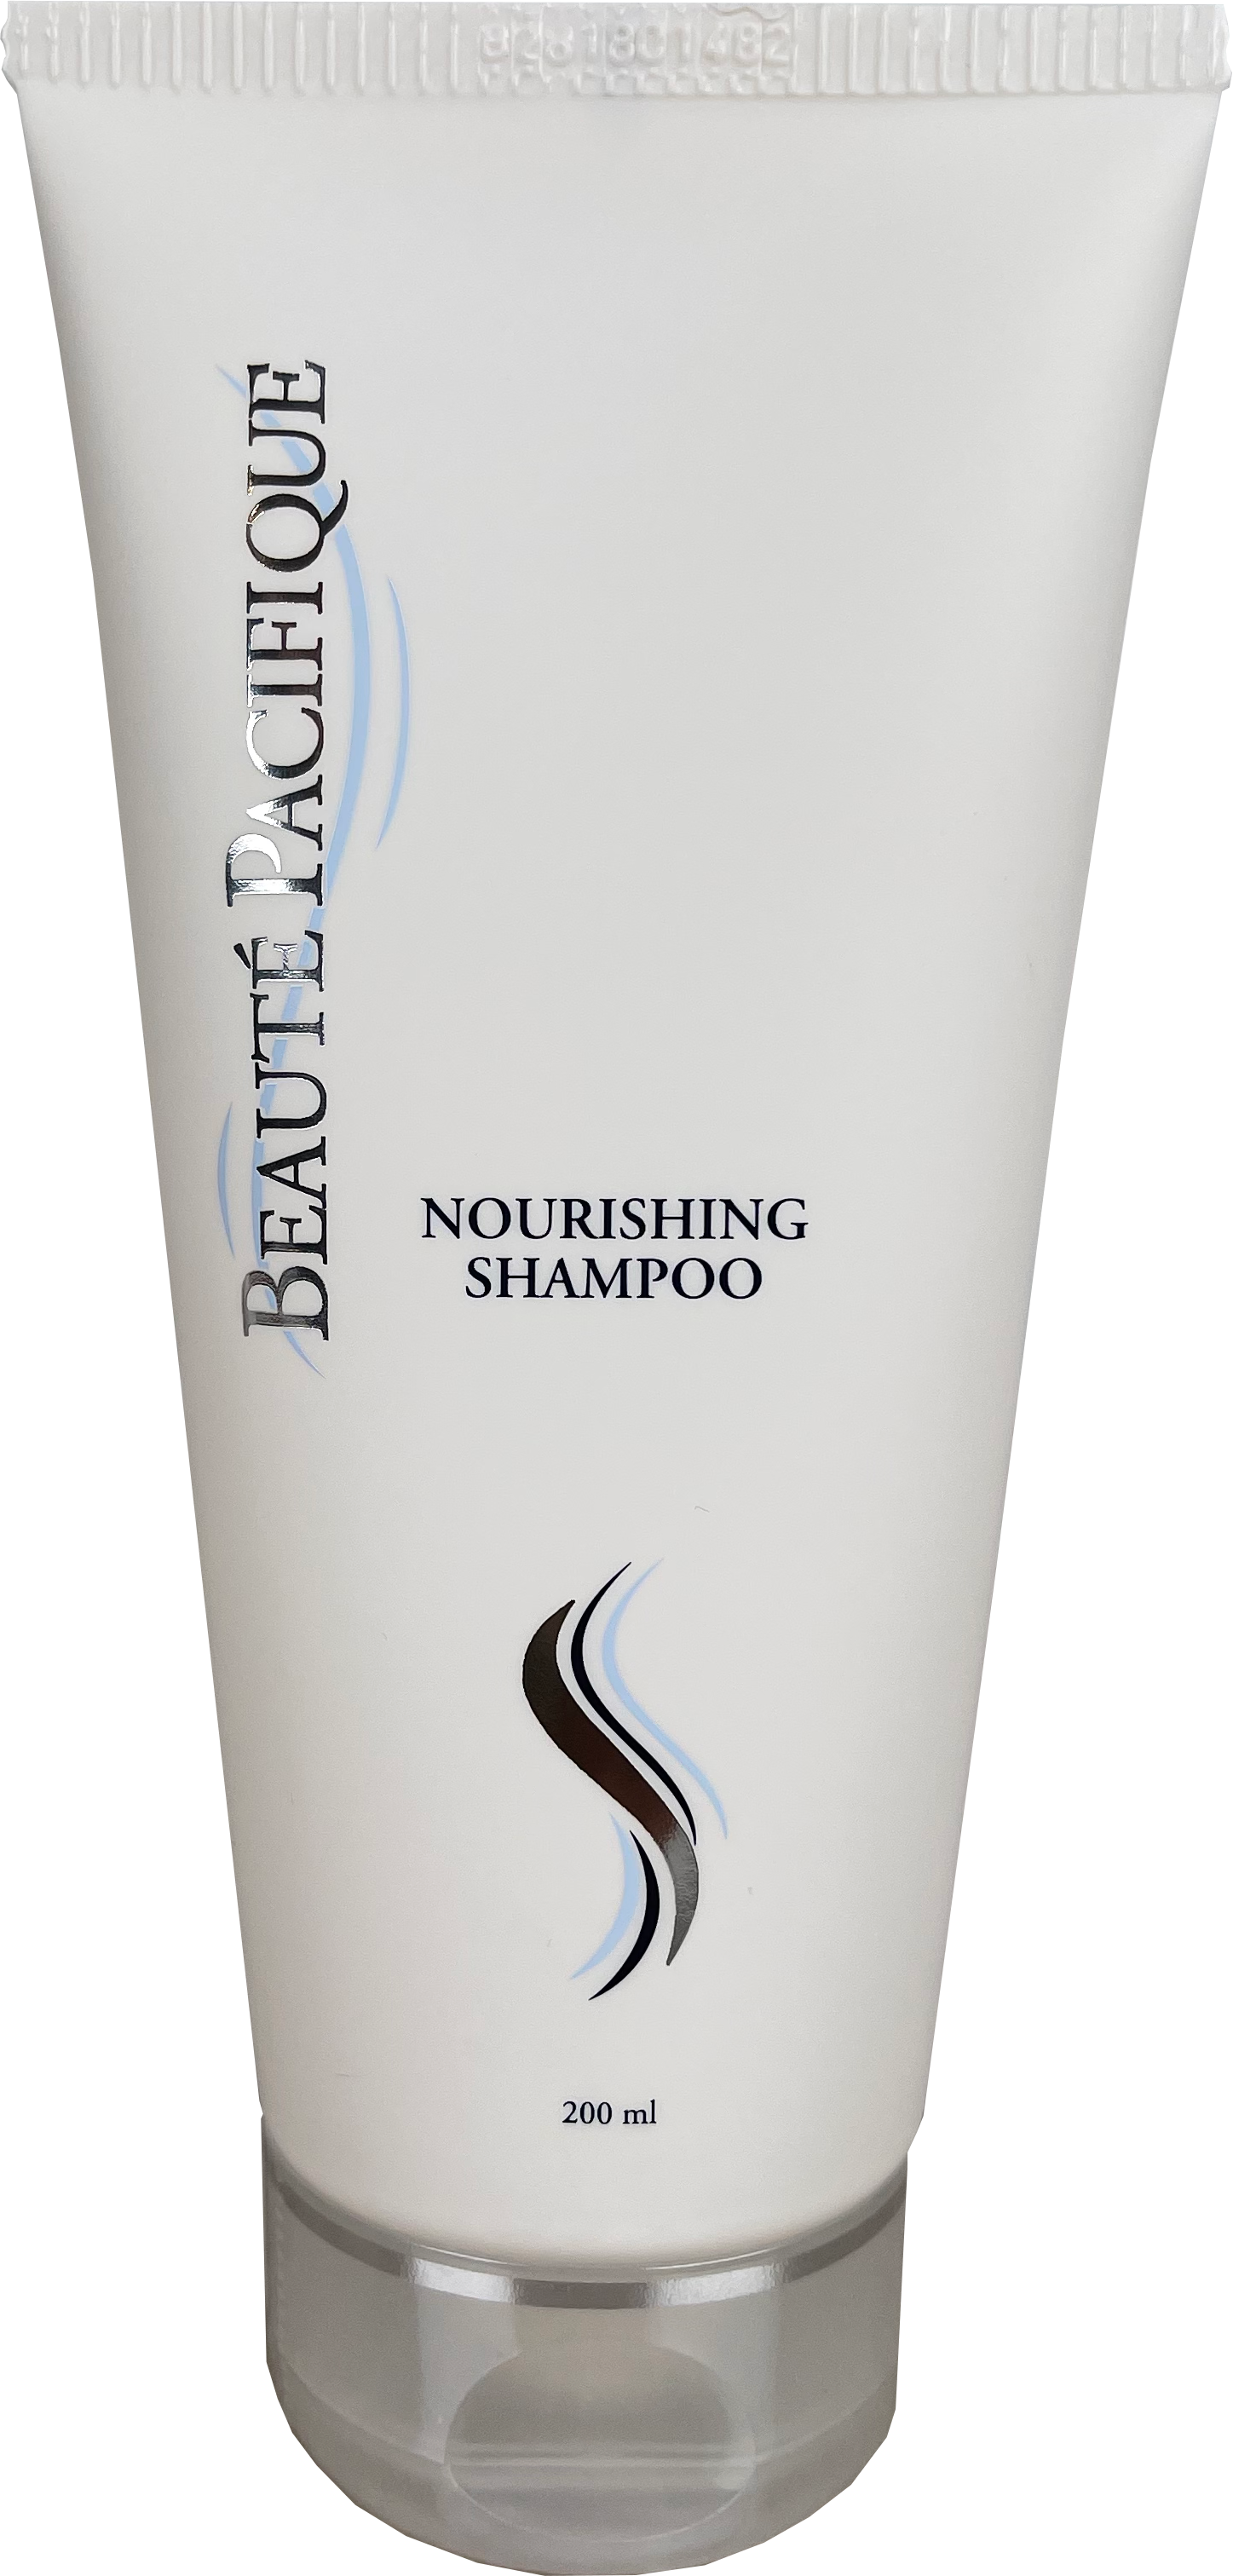  Nourishing Shampoo